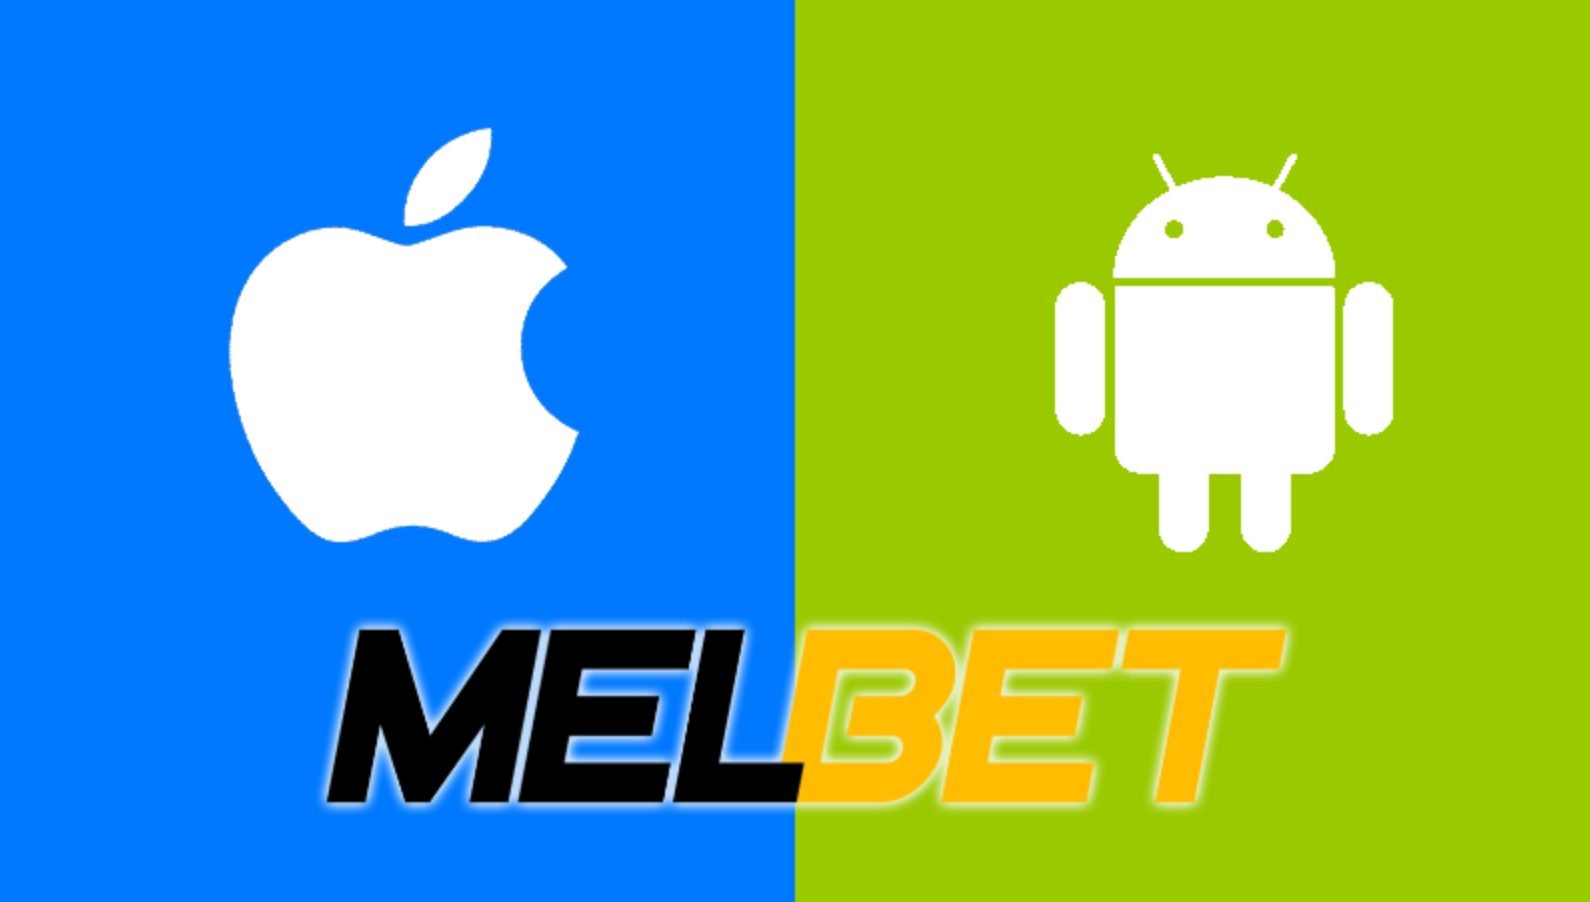 télécharger Melbet app Cote d’Ivoire